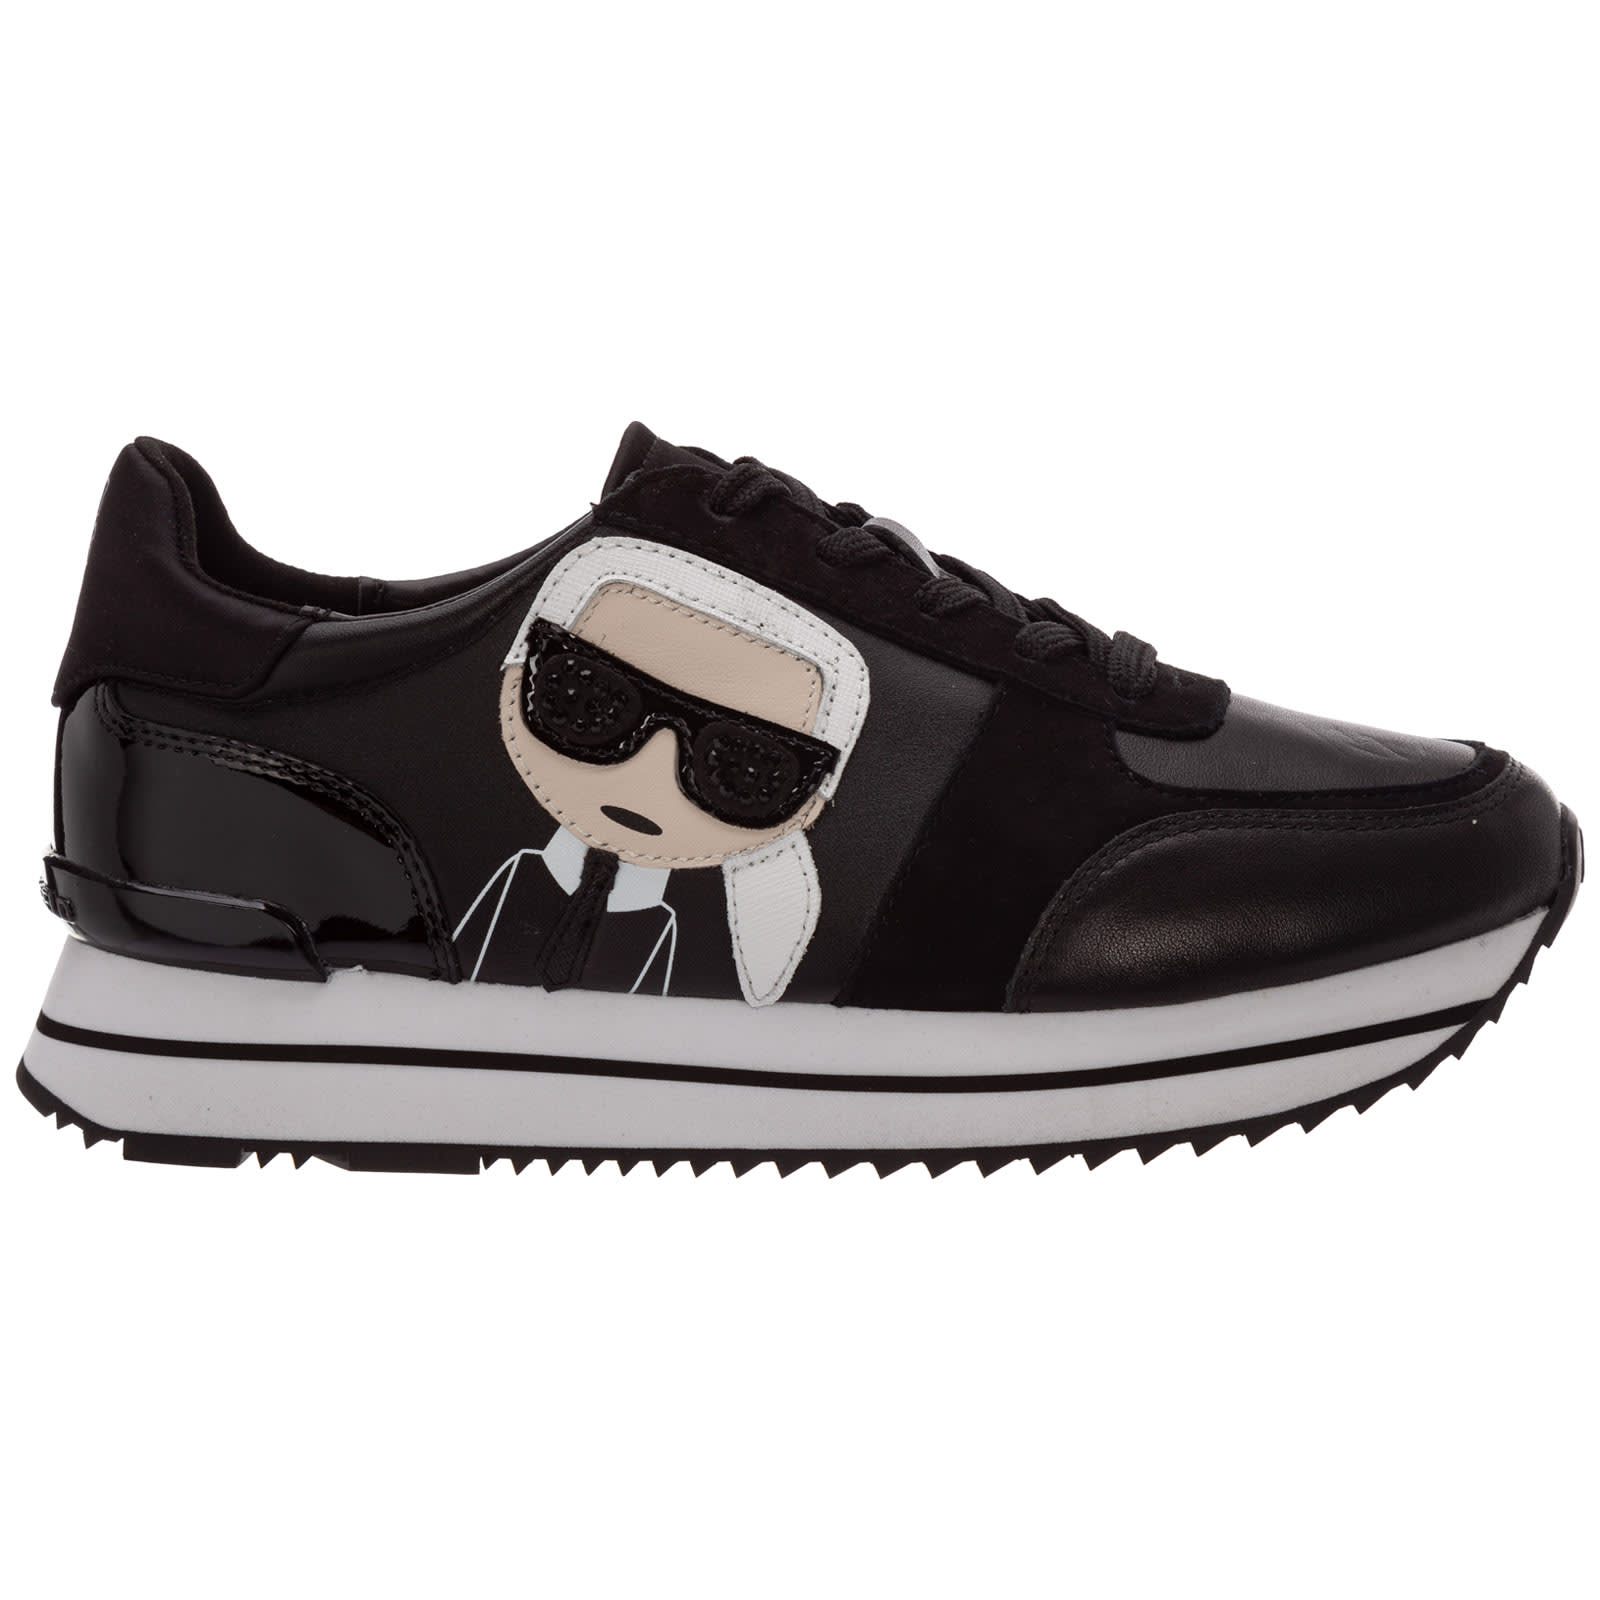 Karl Lagerfeld K/ikonic Velocit? Sneakers